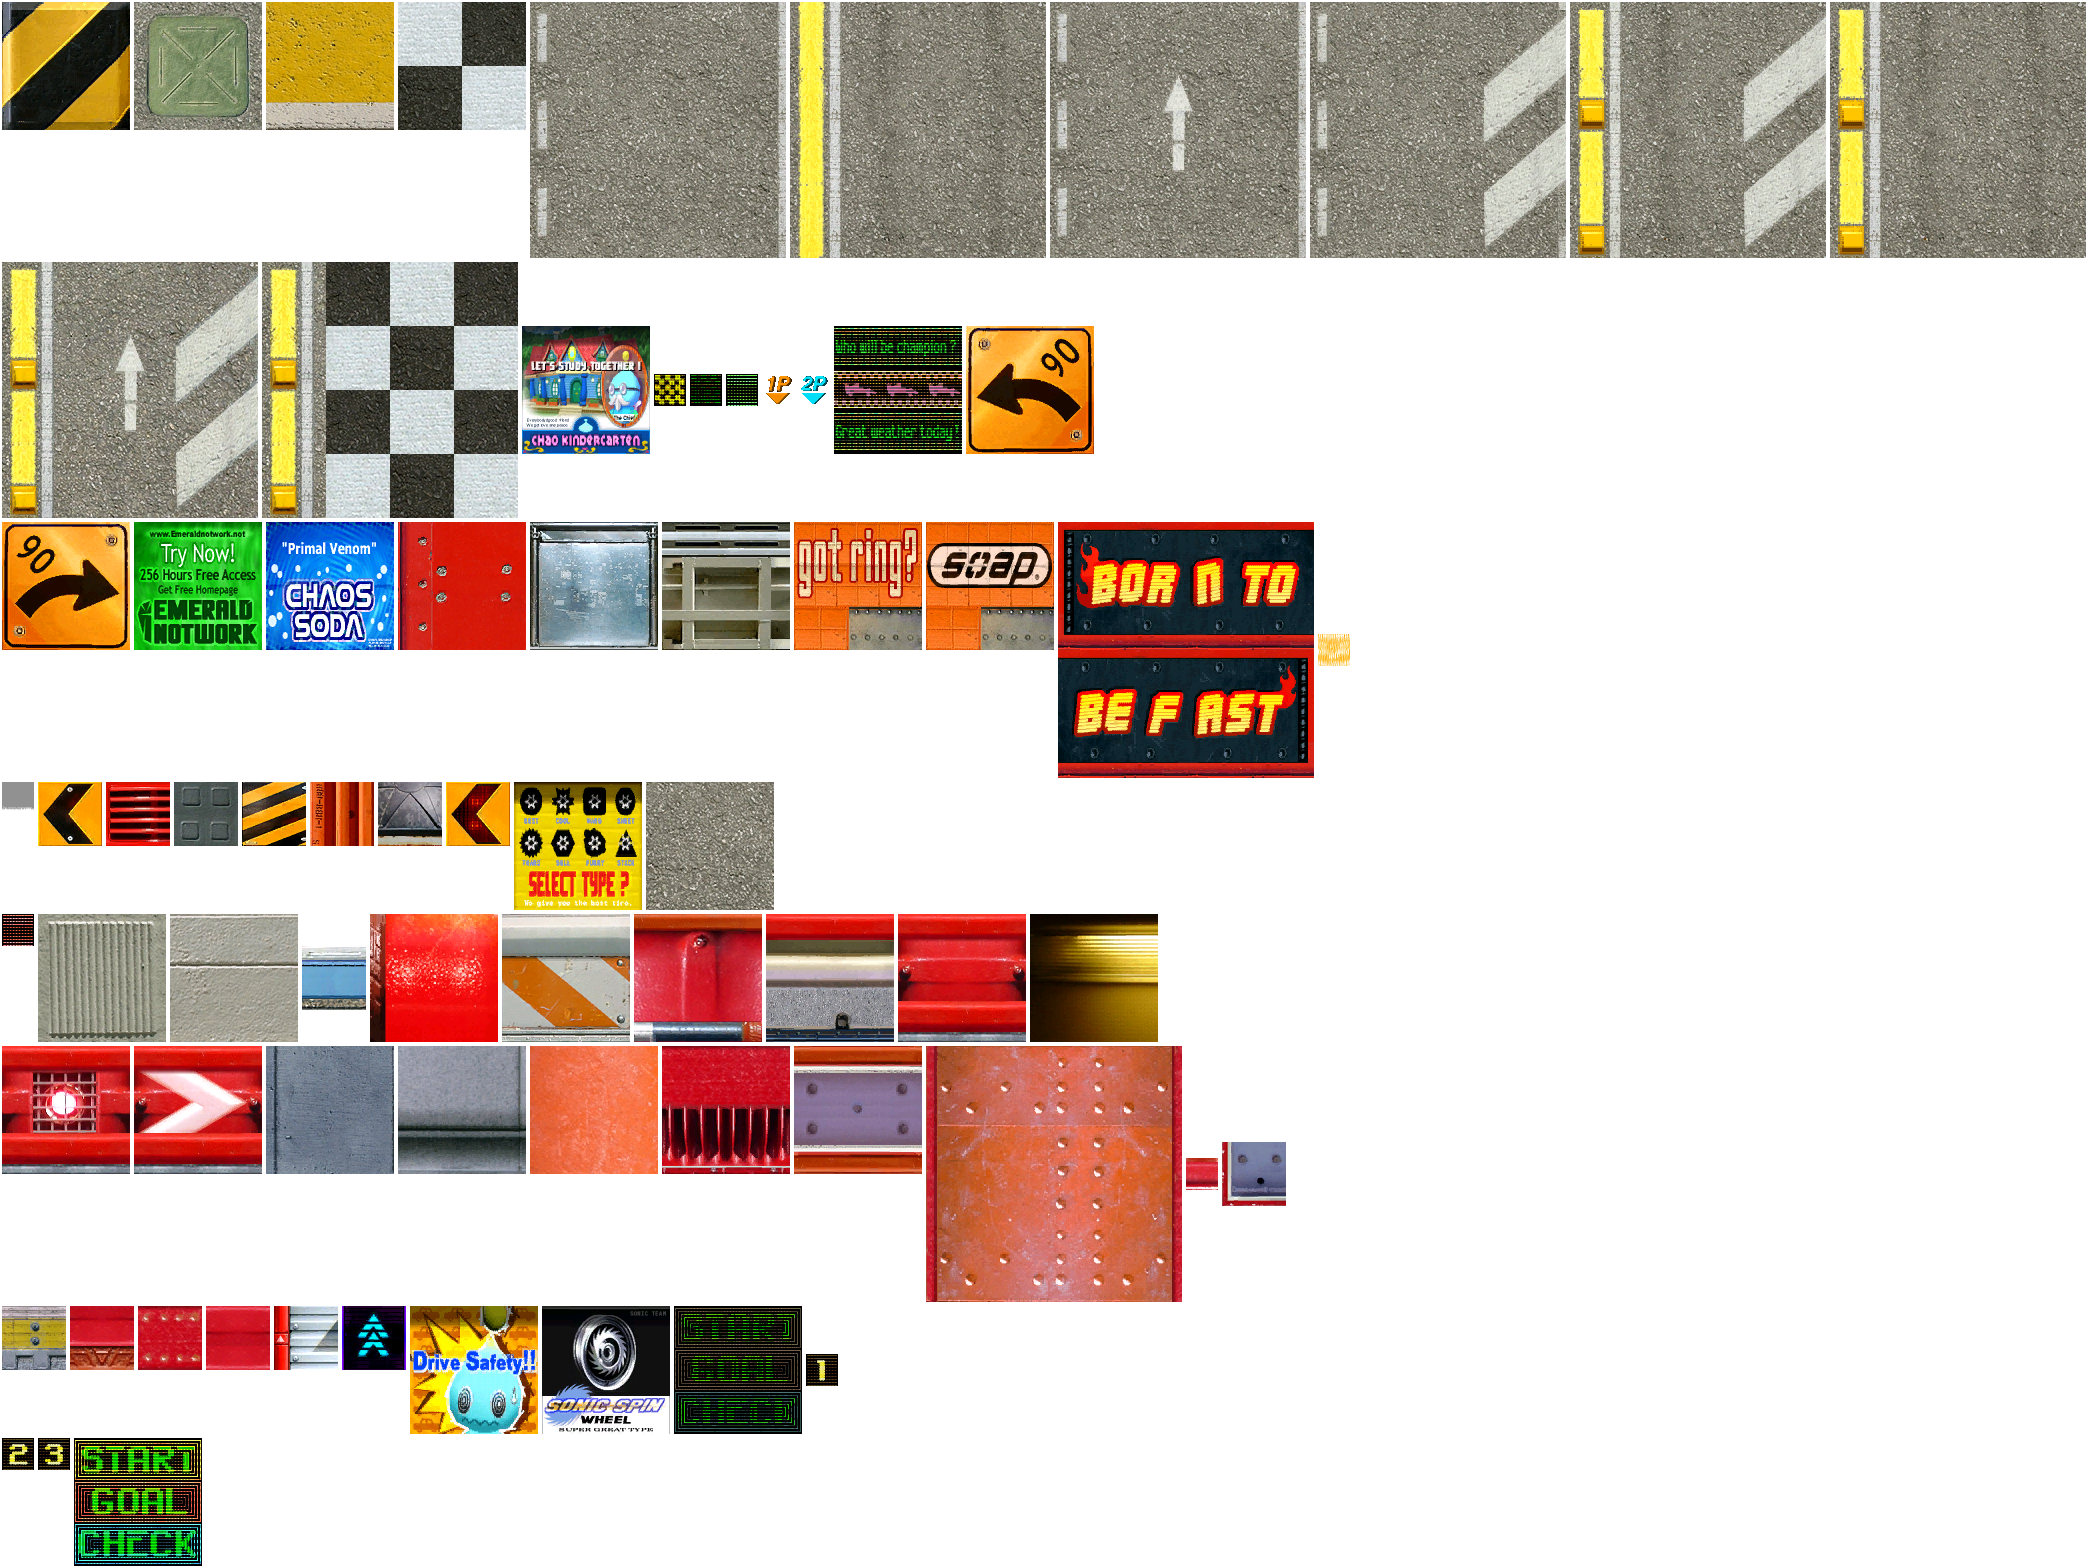 Sonic Adventure 2: Battle - Route 101 / 280 & Kart Race